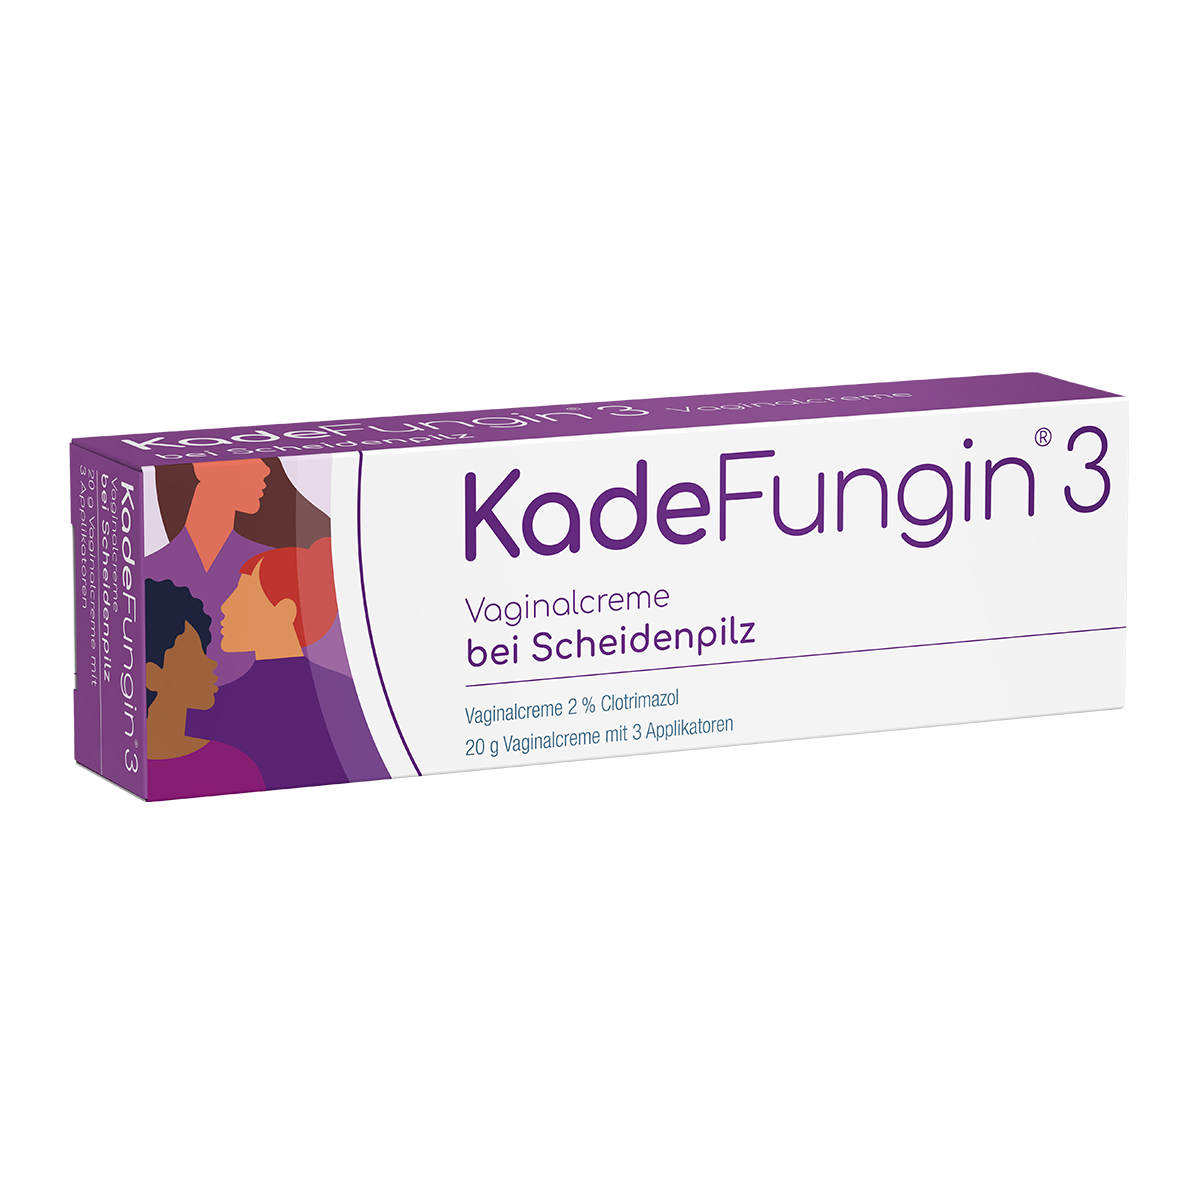 KadeFungin 3 Vaginalcreme bei Scheidenpilz